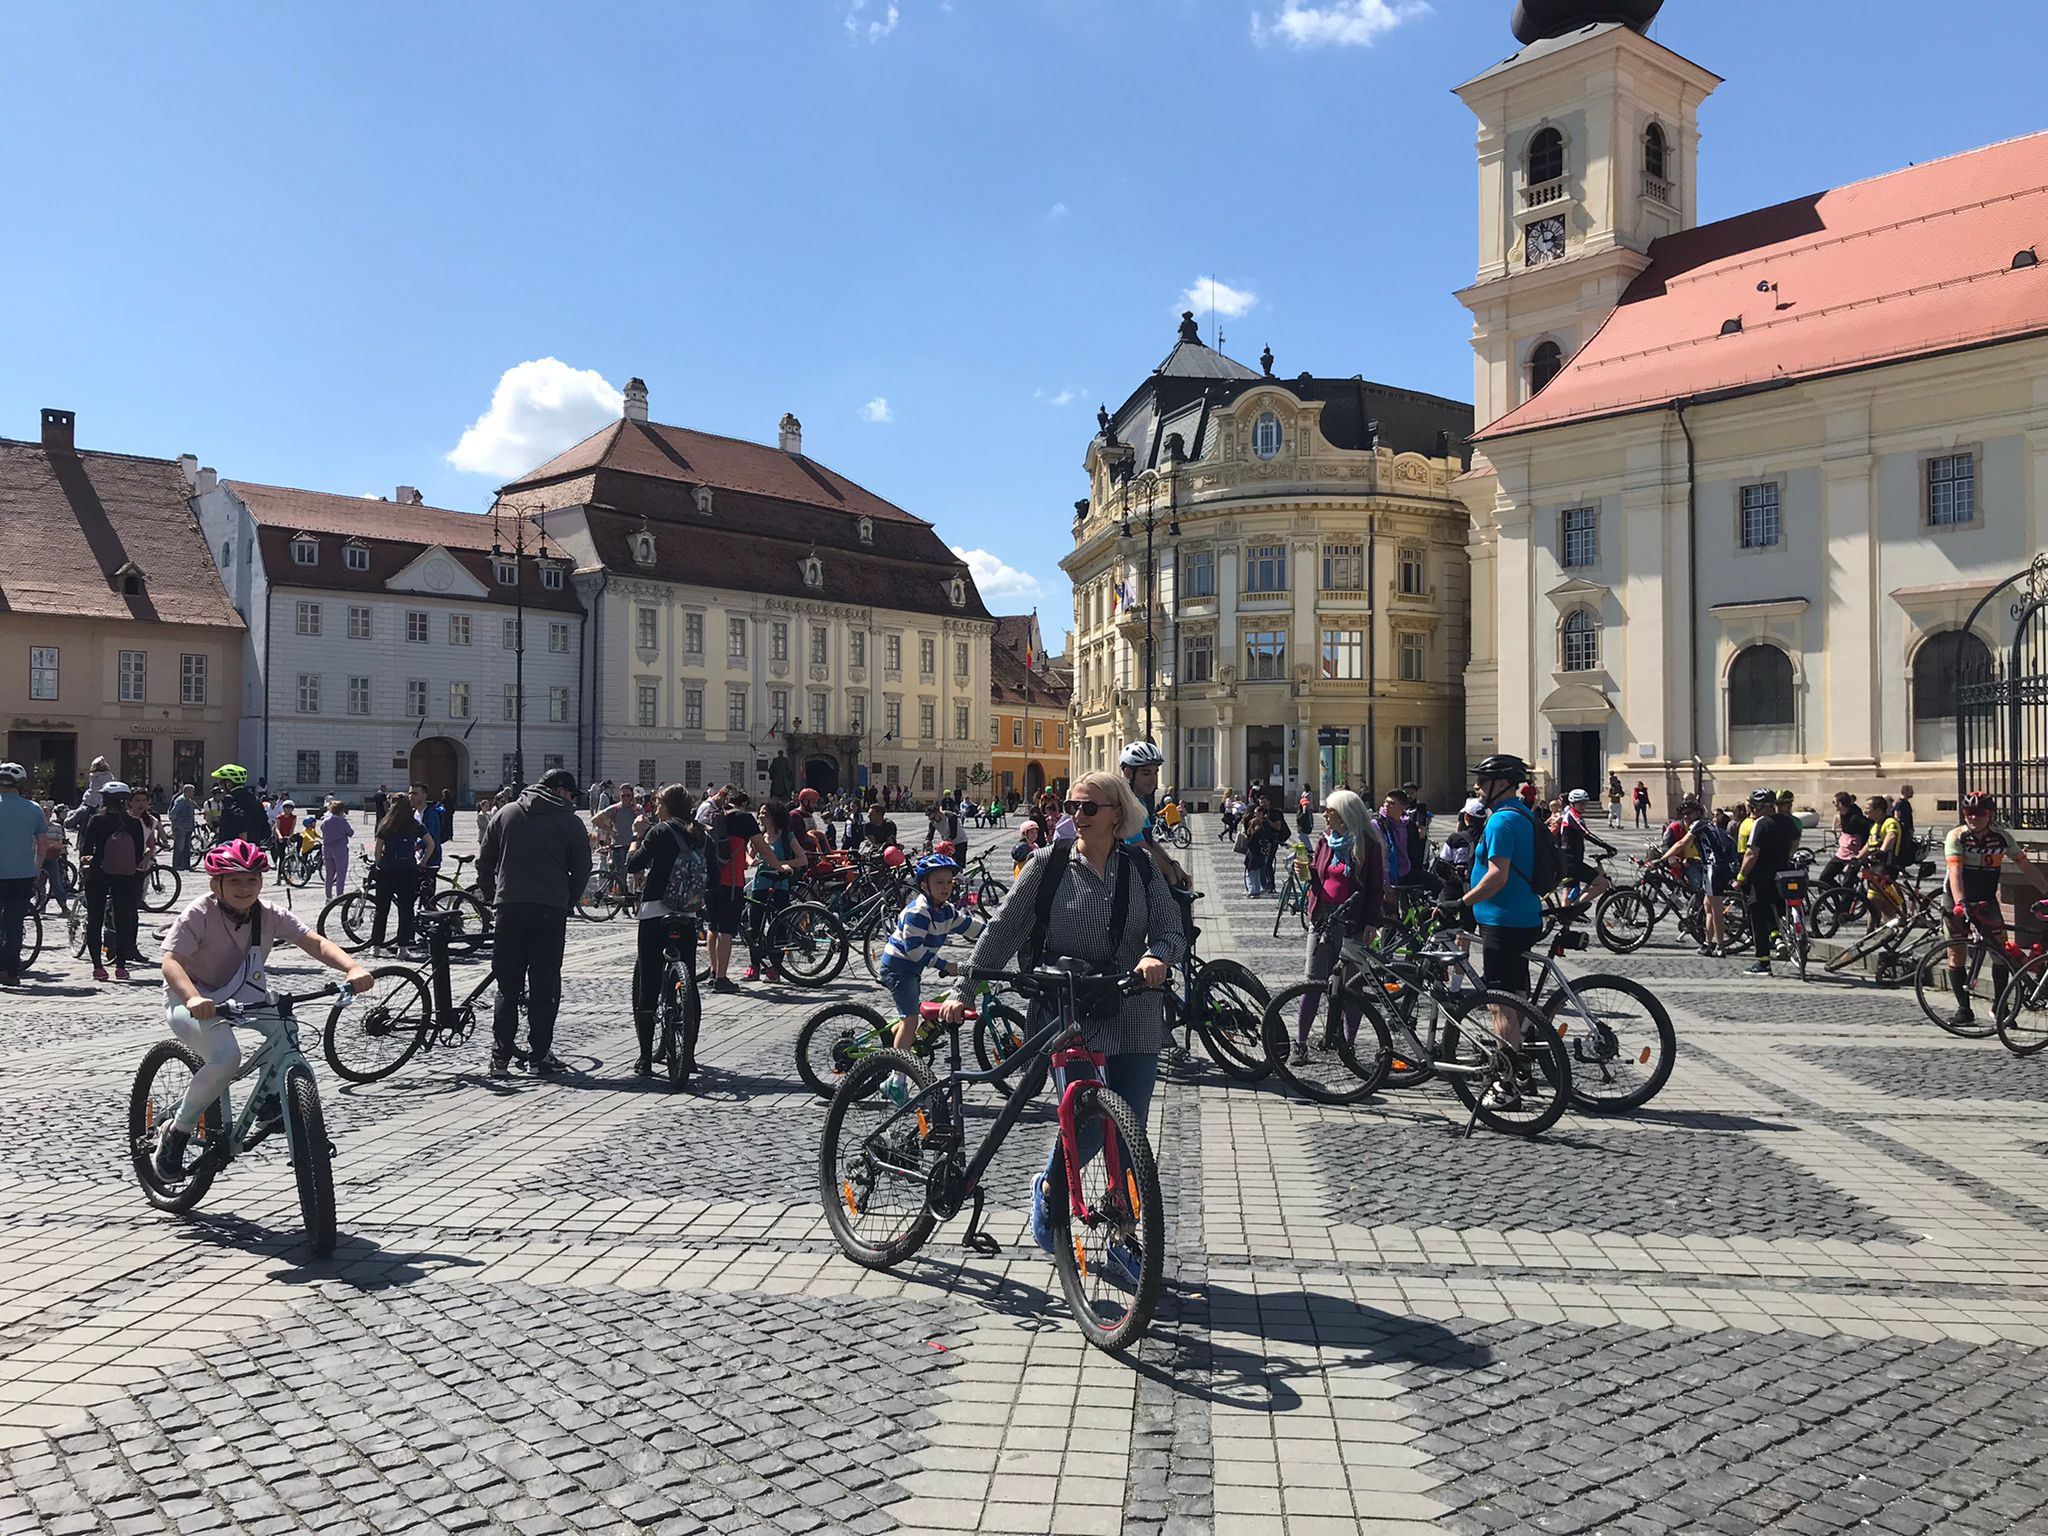 Duminică scoatem bicicleta și ne plimbăm prin cartierele Sibiului. Turul începe în Piața Mare